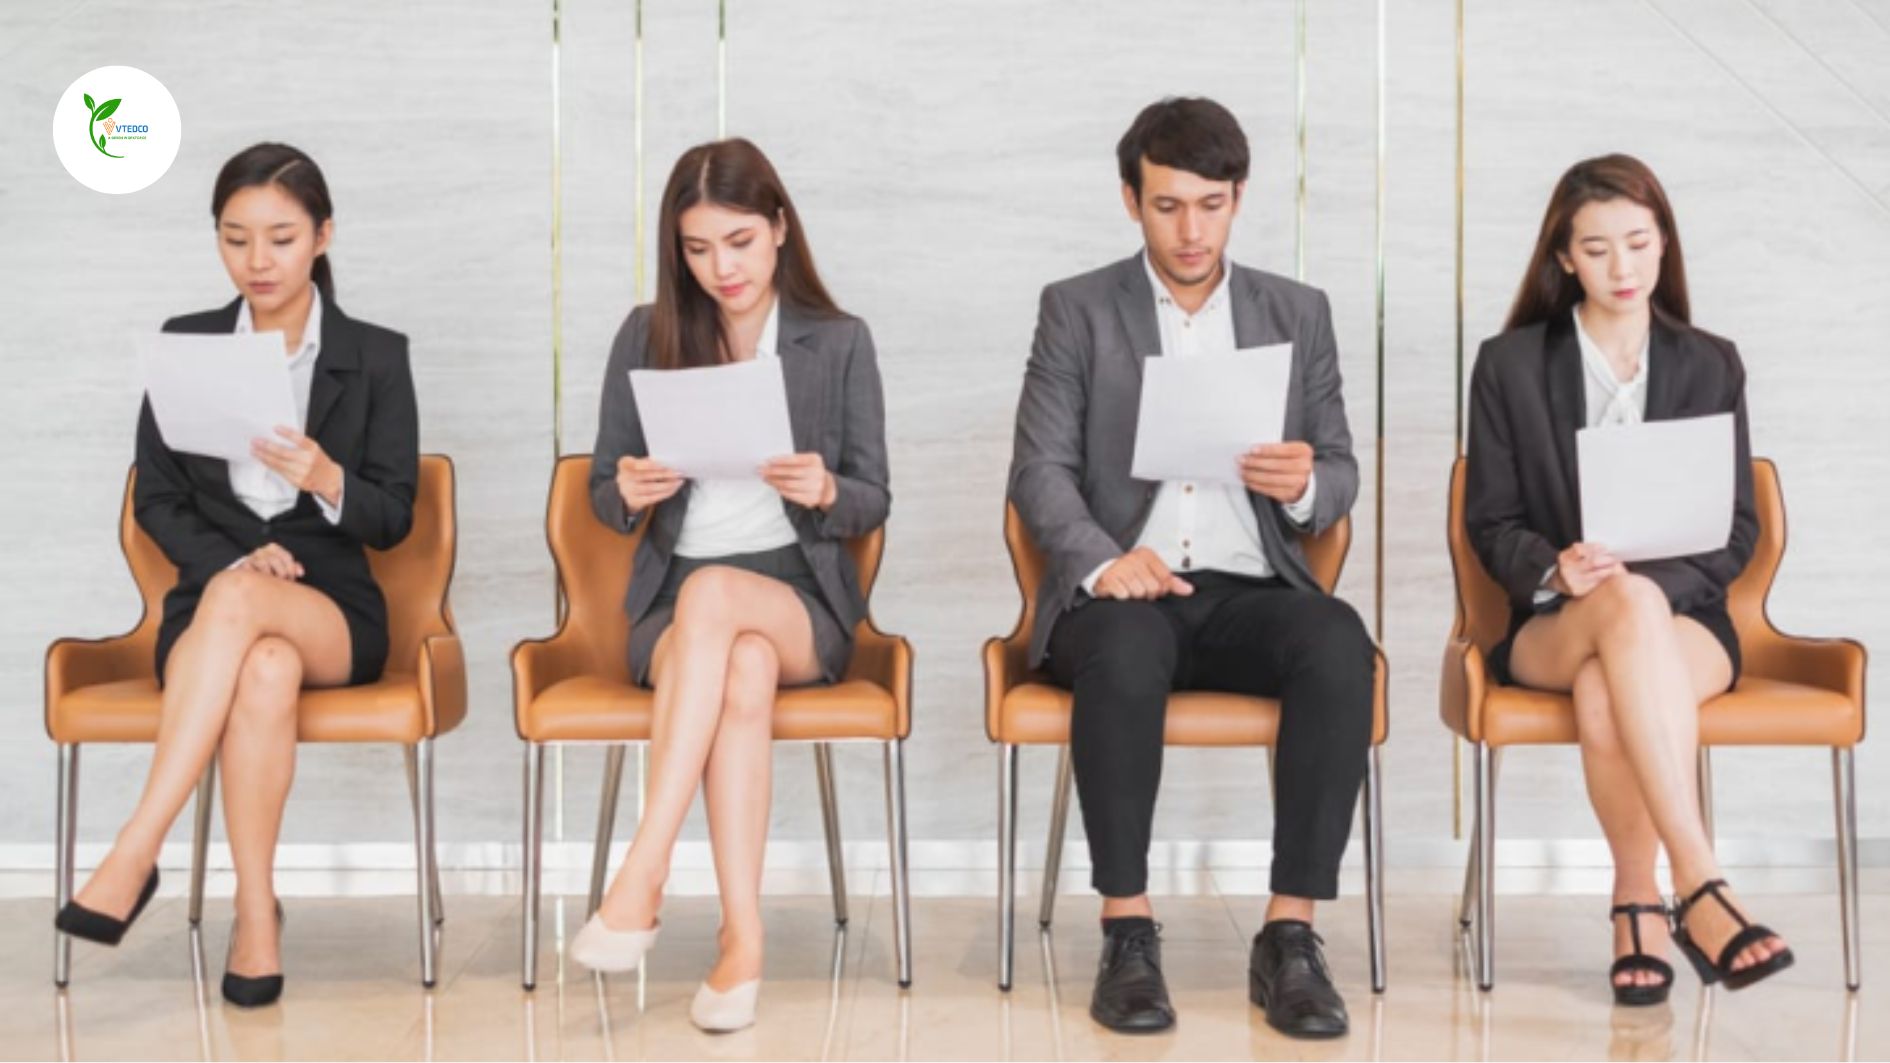 Nghịch lý: Ứng viên không tìm được việc, doanh nghiệp không tuyển được người